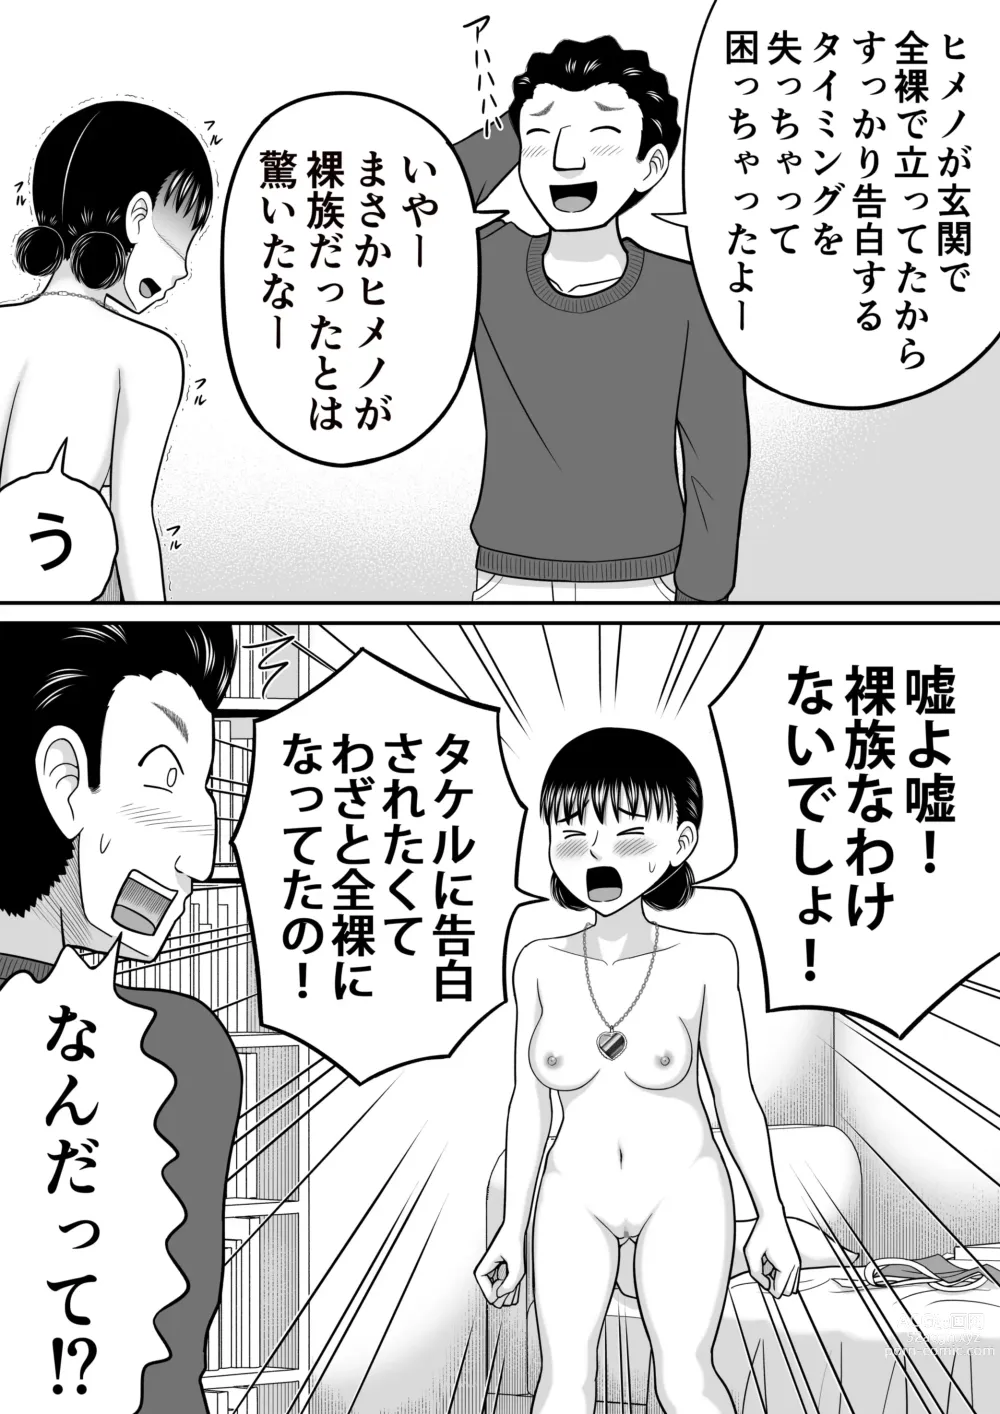 Page 57 of doujinshi Zenra Shoujo 2